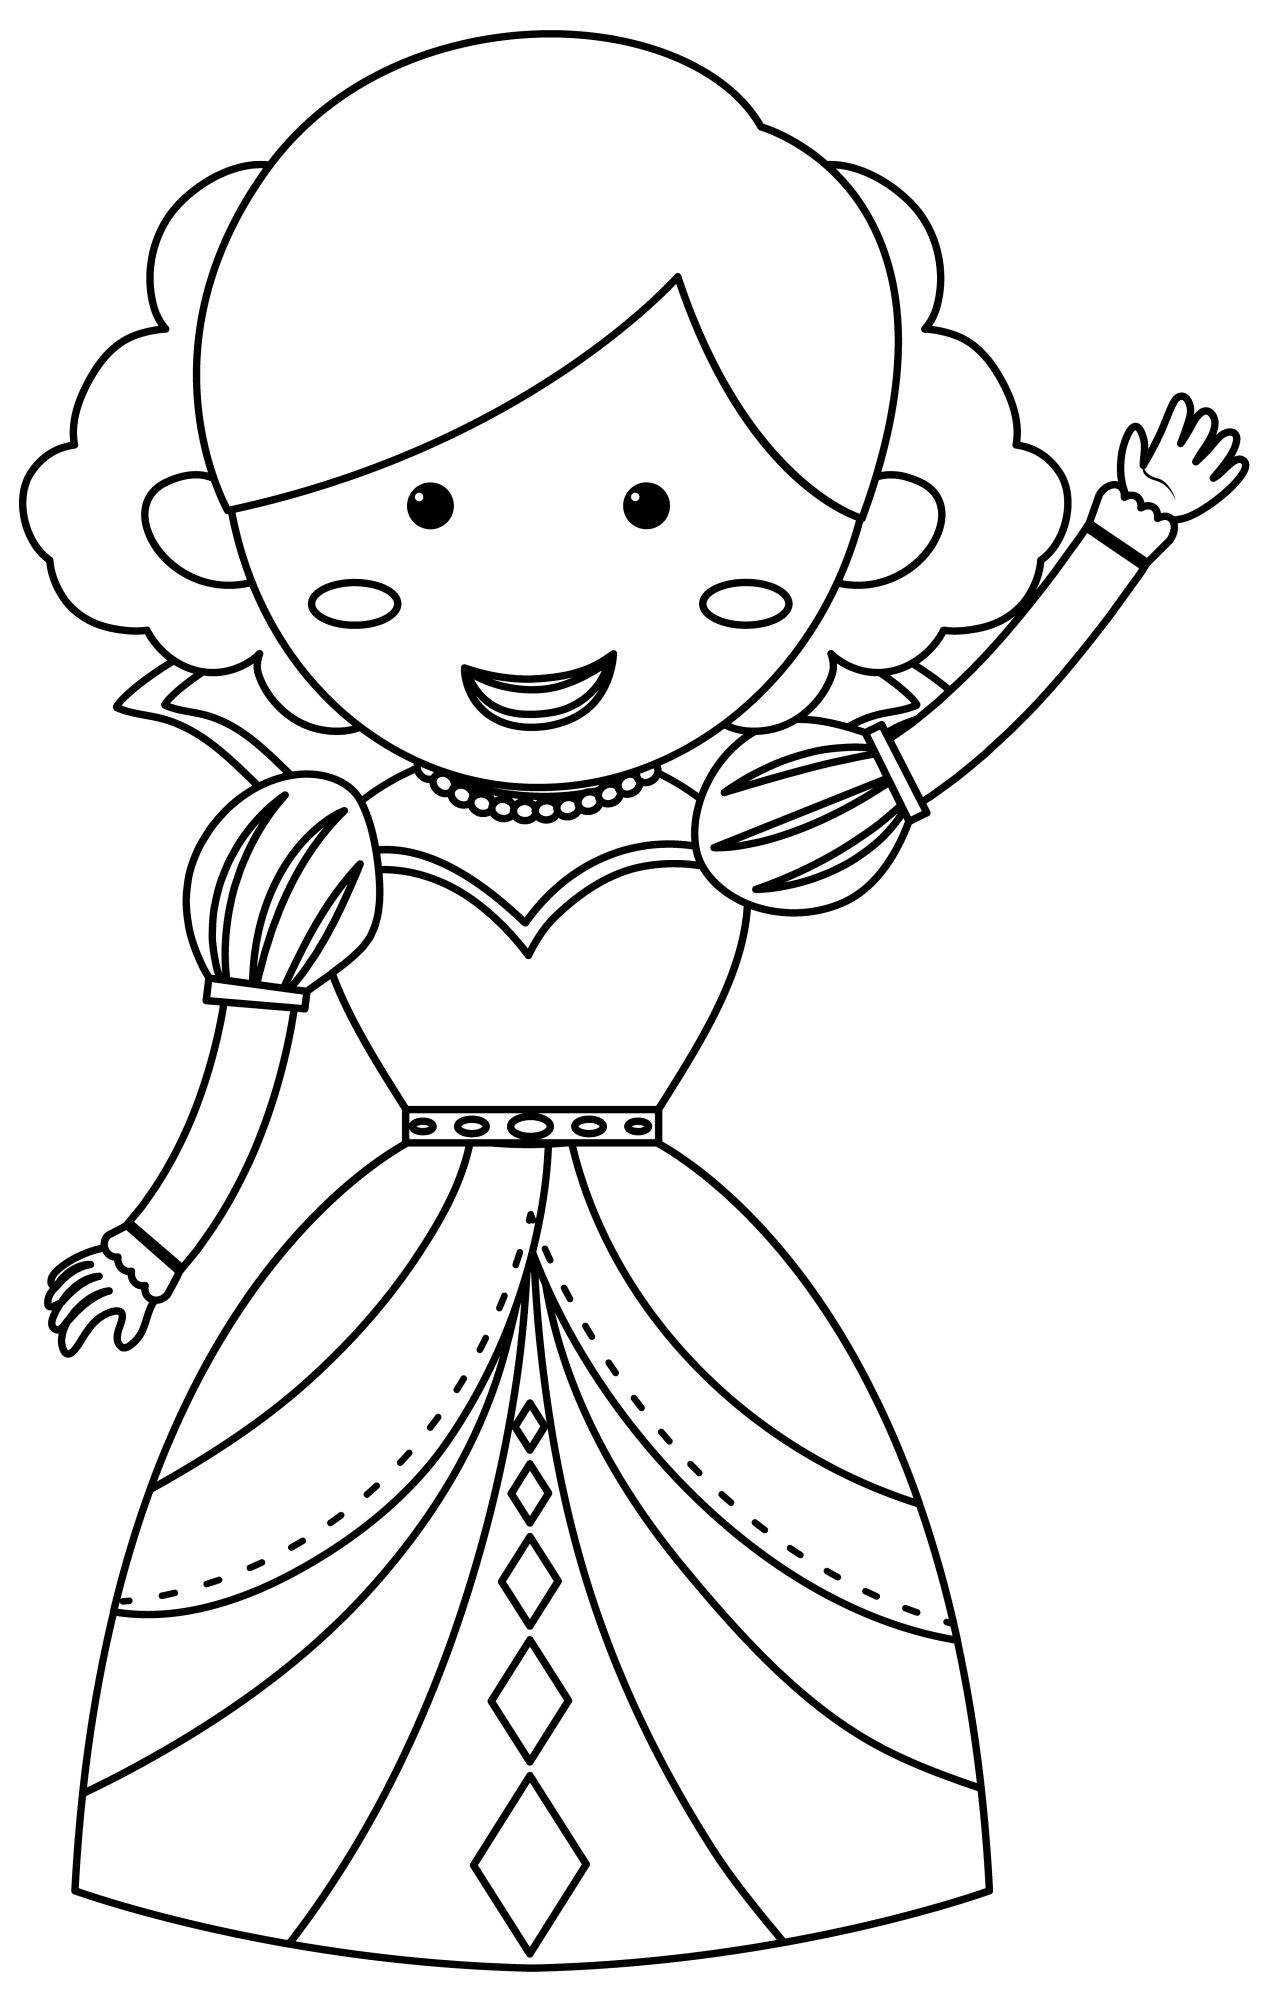 Раскраска для детей: принцесса Белль машет рукой